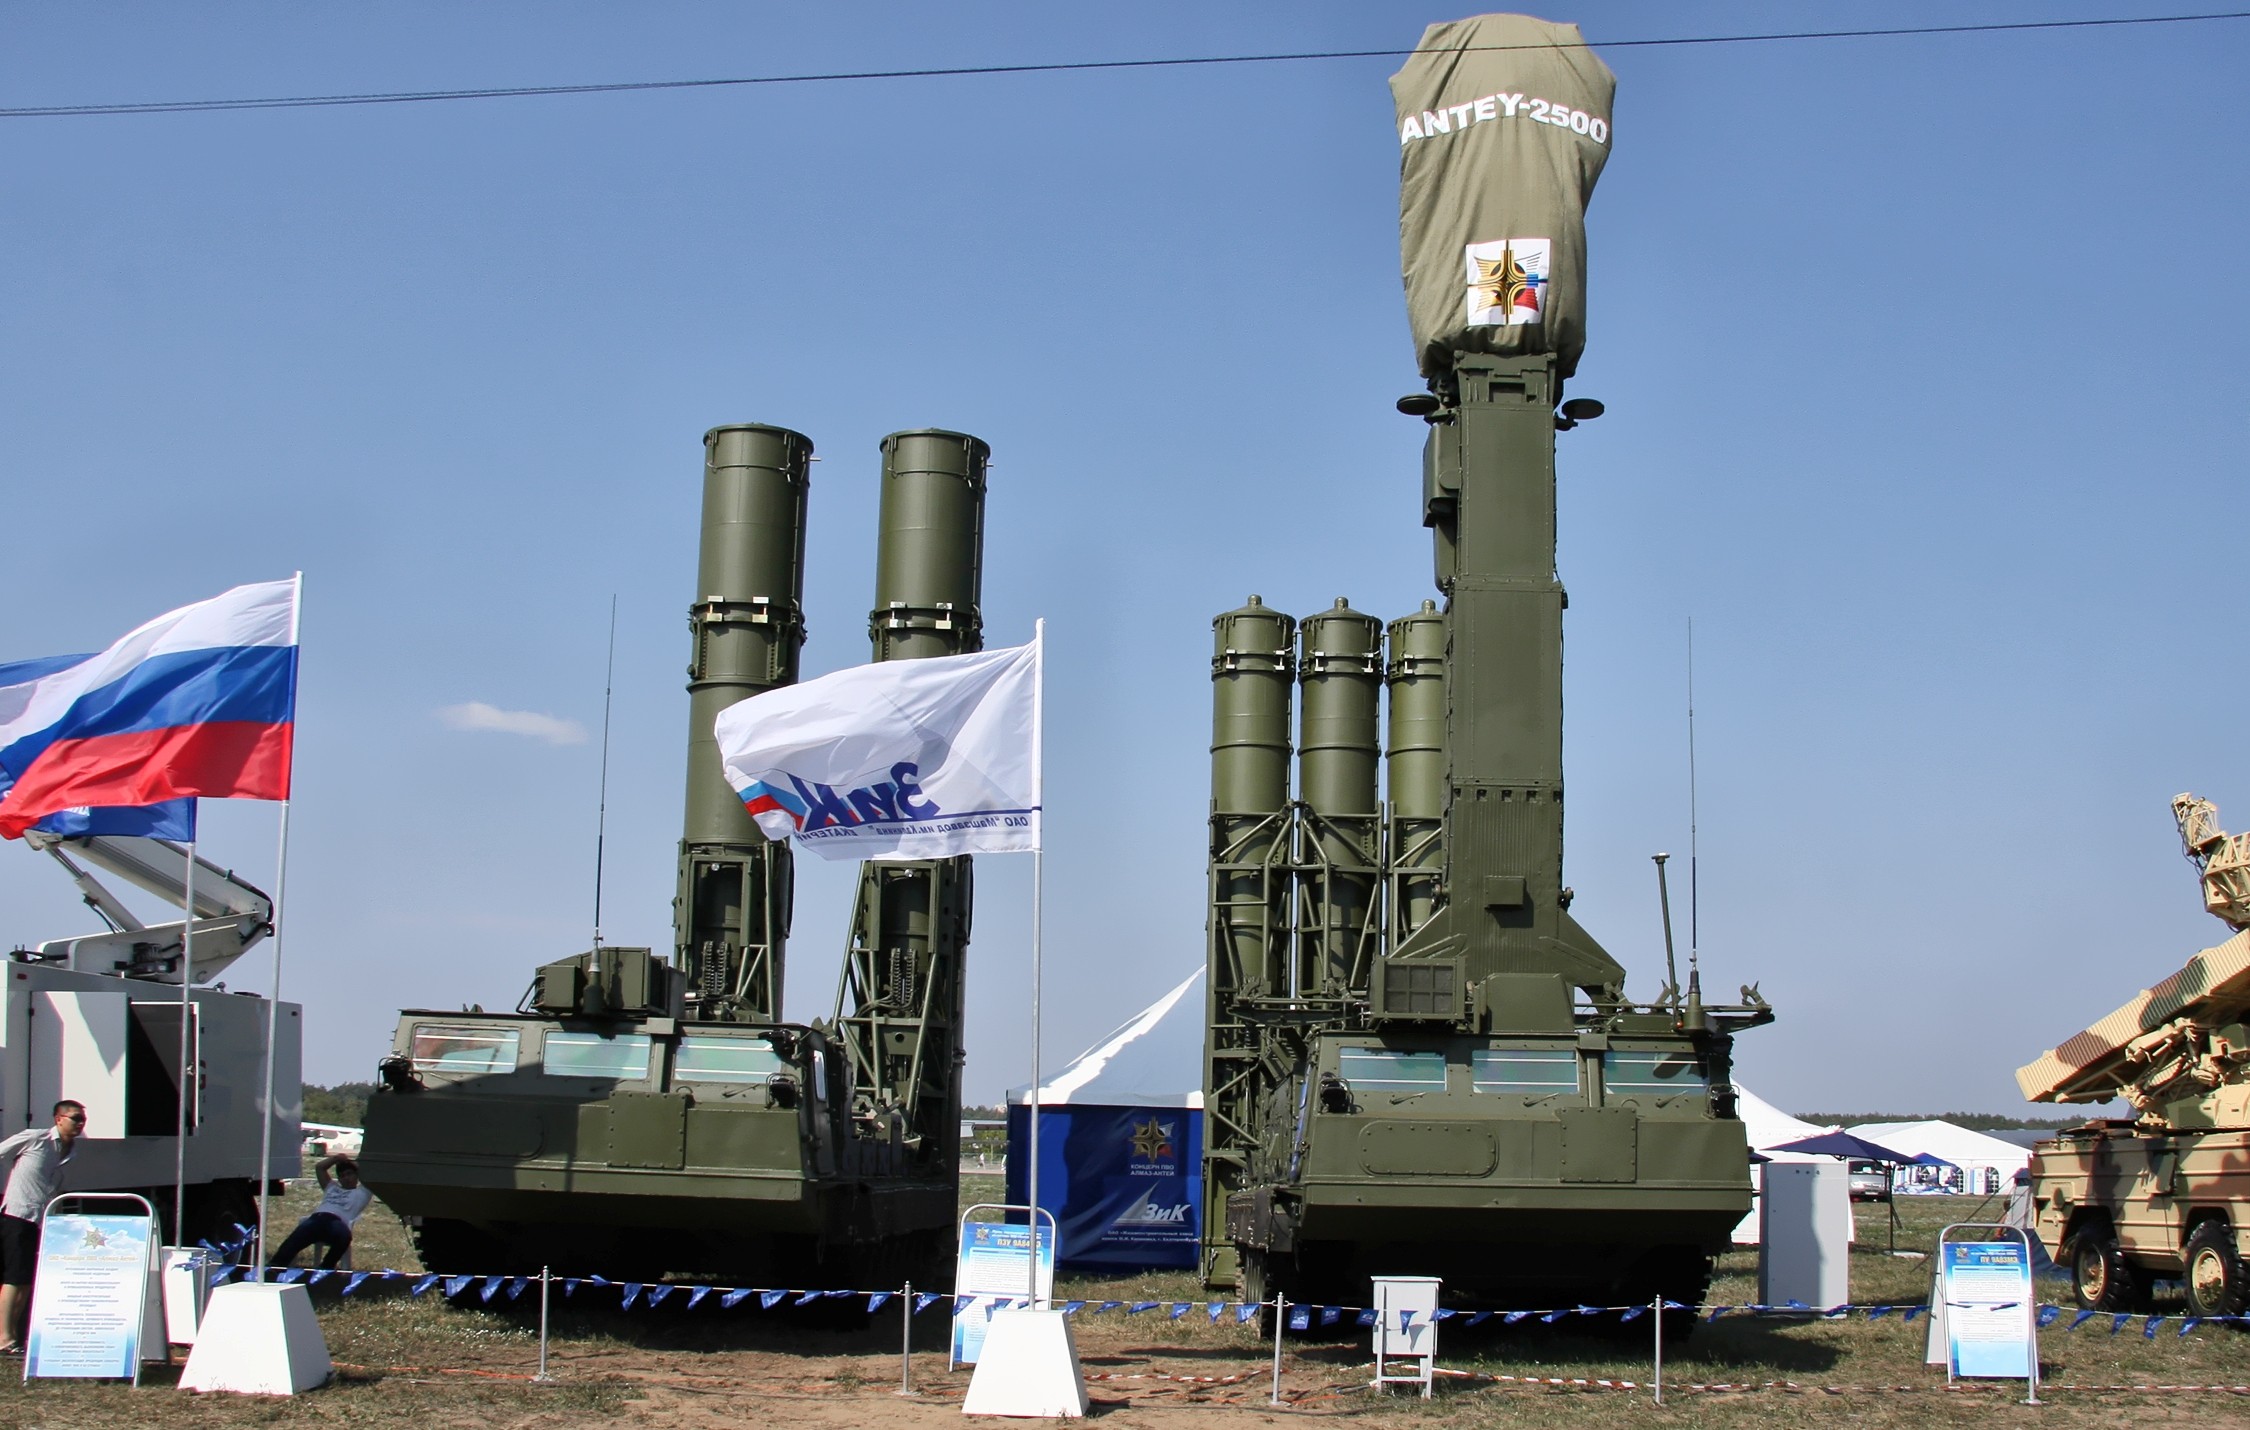 Россия намерена вооружить Египет: в планах поставки ракетных систем "Антей-2500"